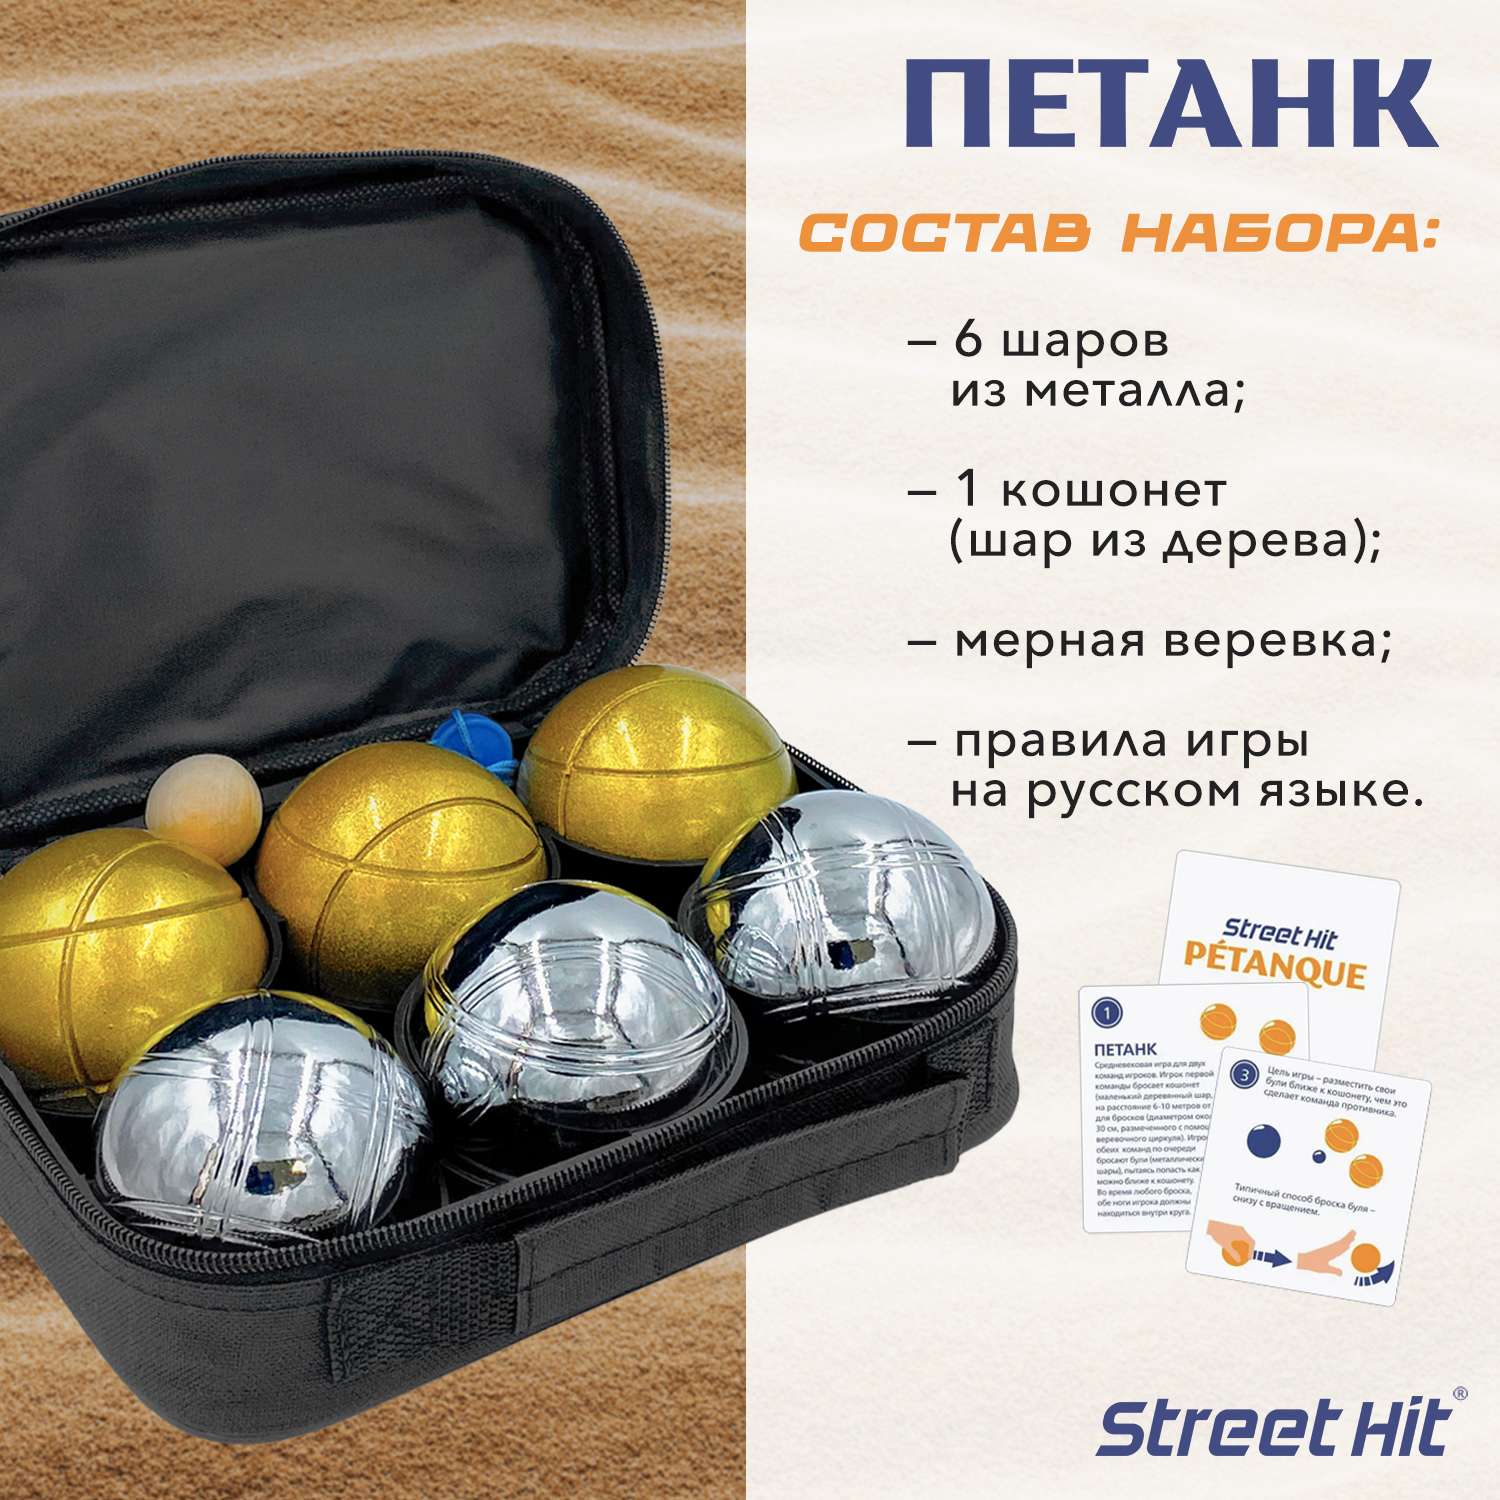 Набор для игры Street Hit Петанк Бочче 6 шаров стальной золотой - фото 2